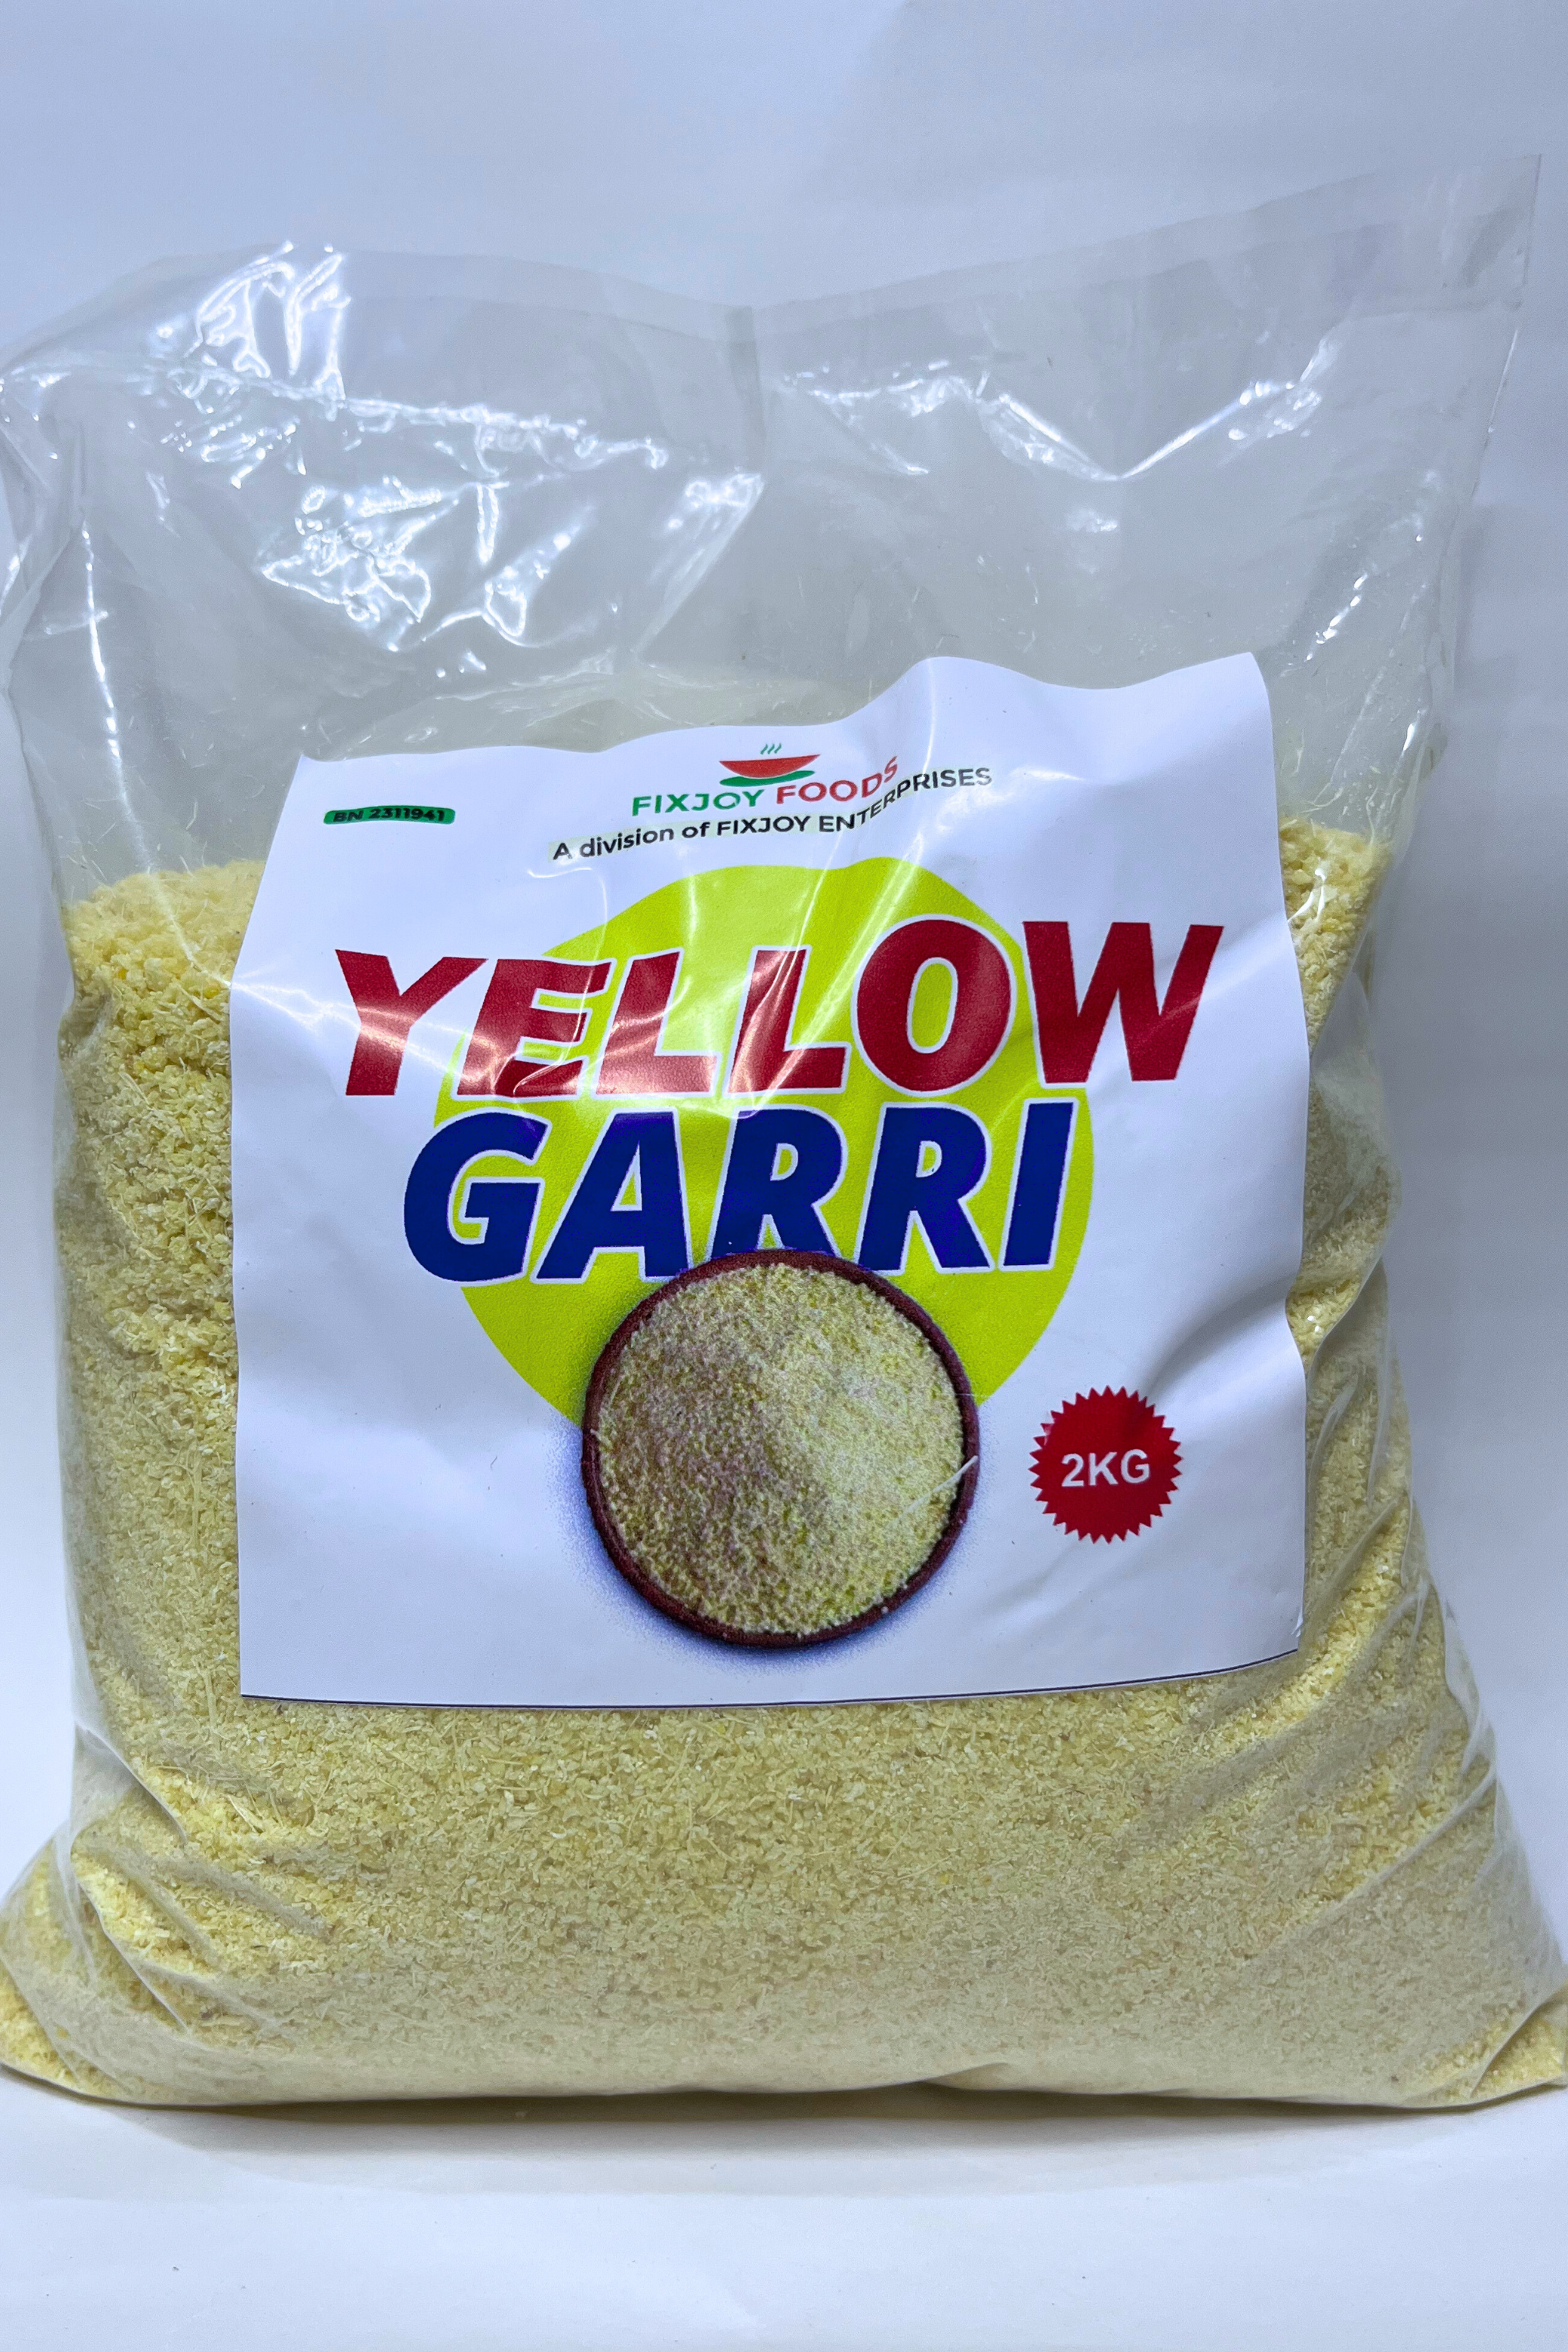 Delta Yellow Garri 2kg